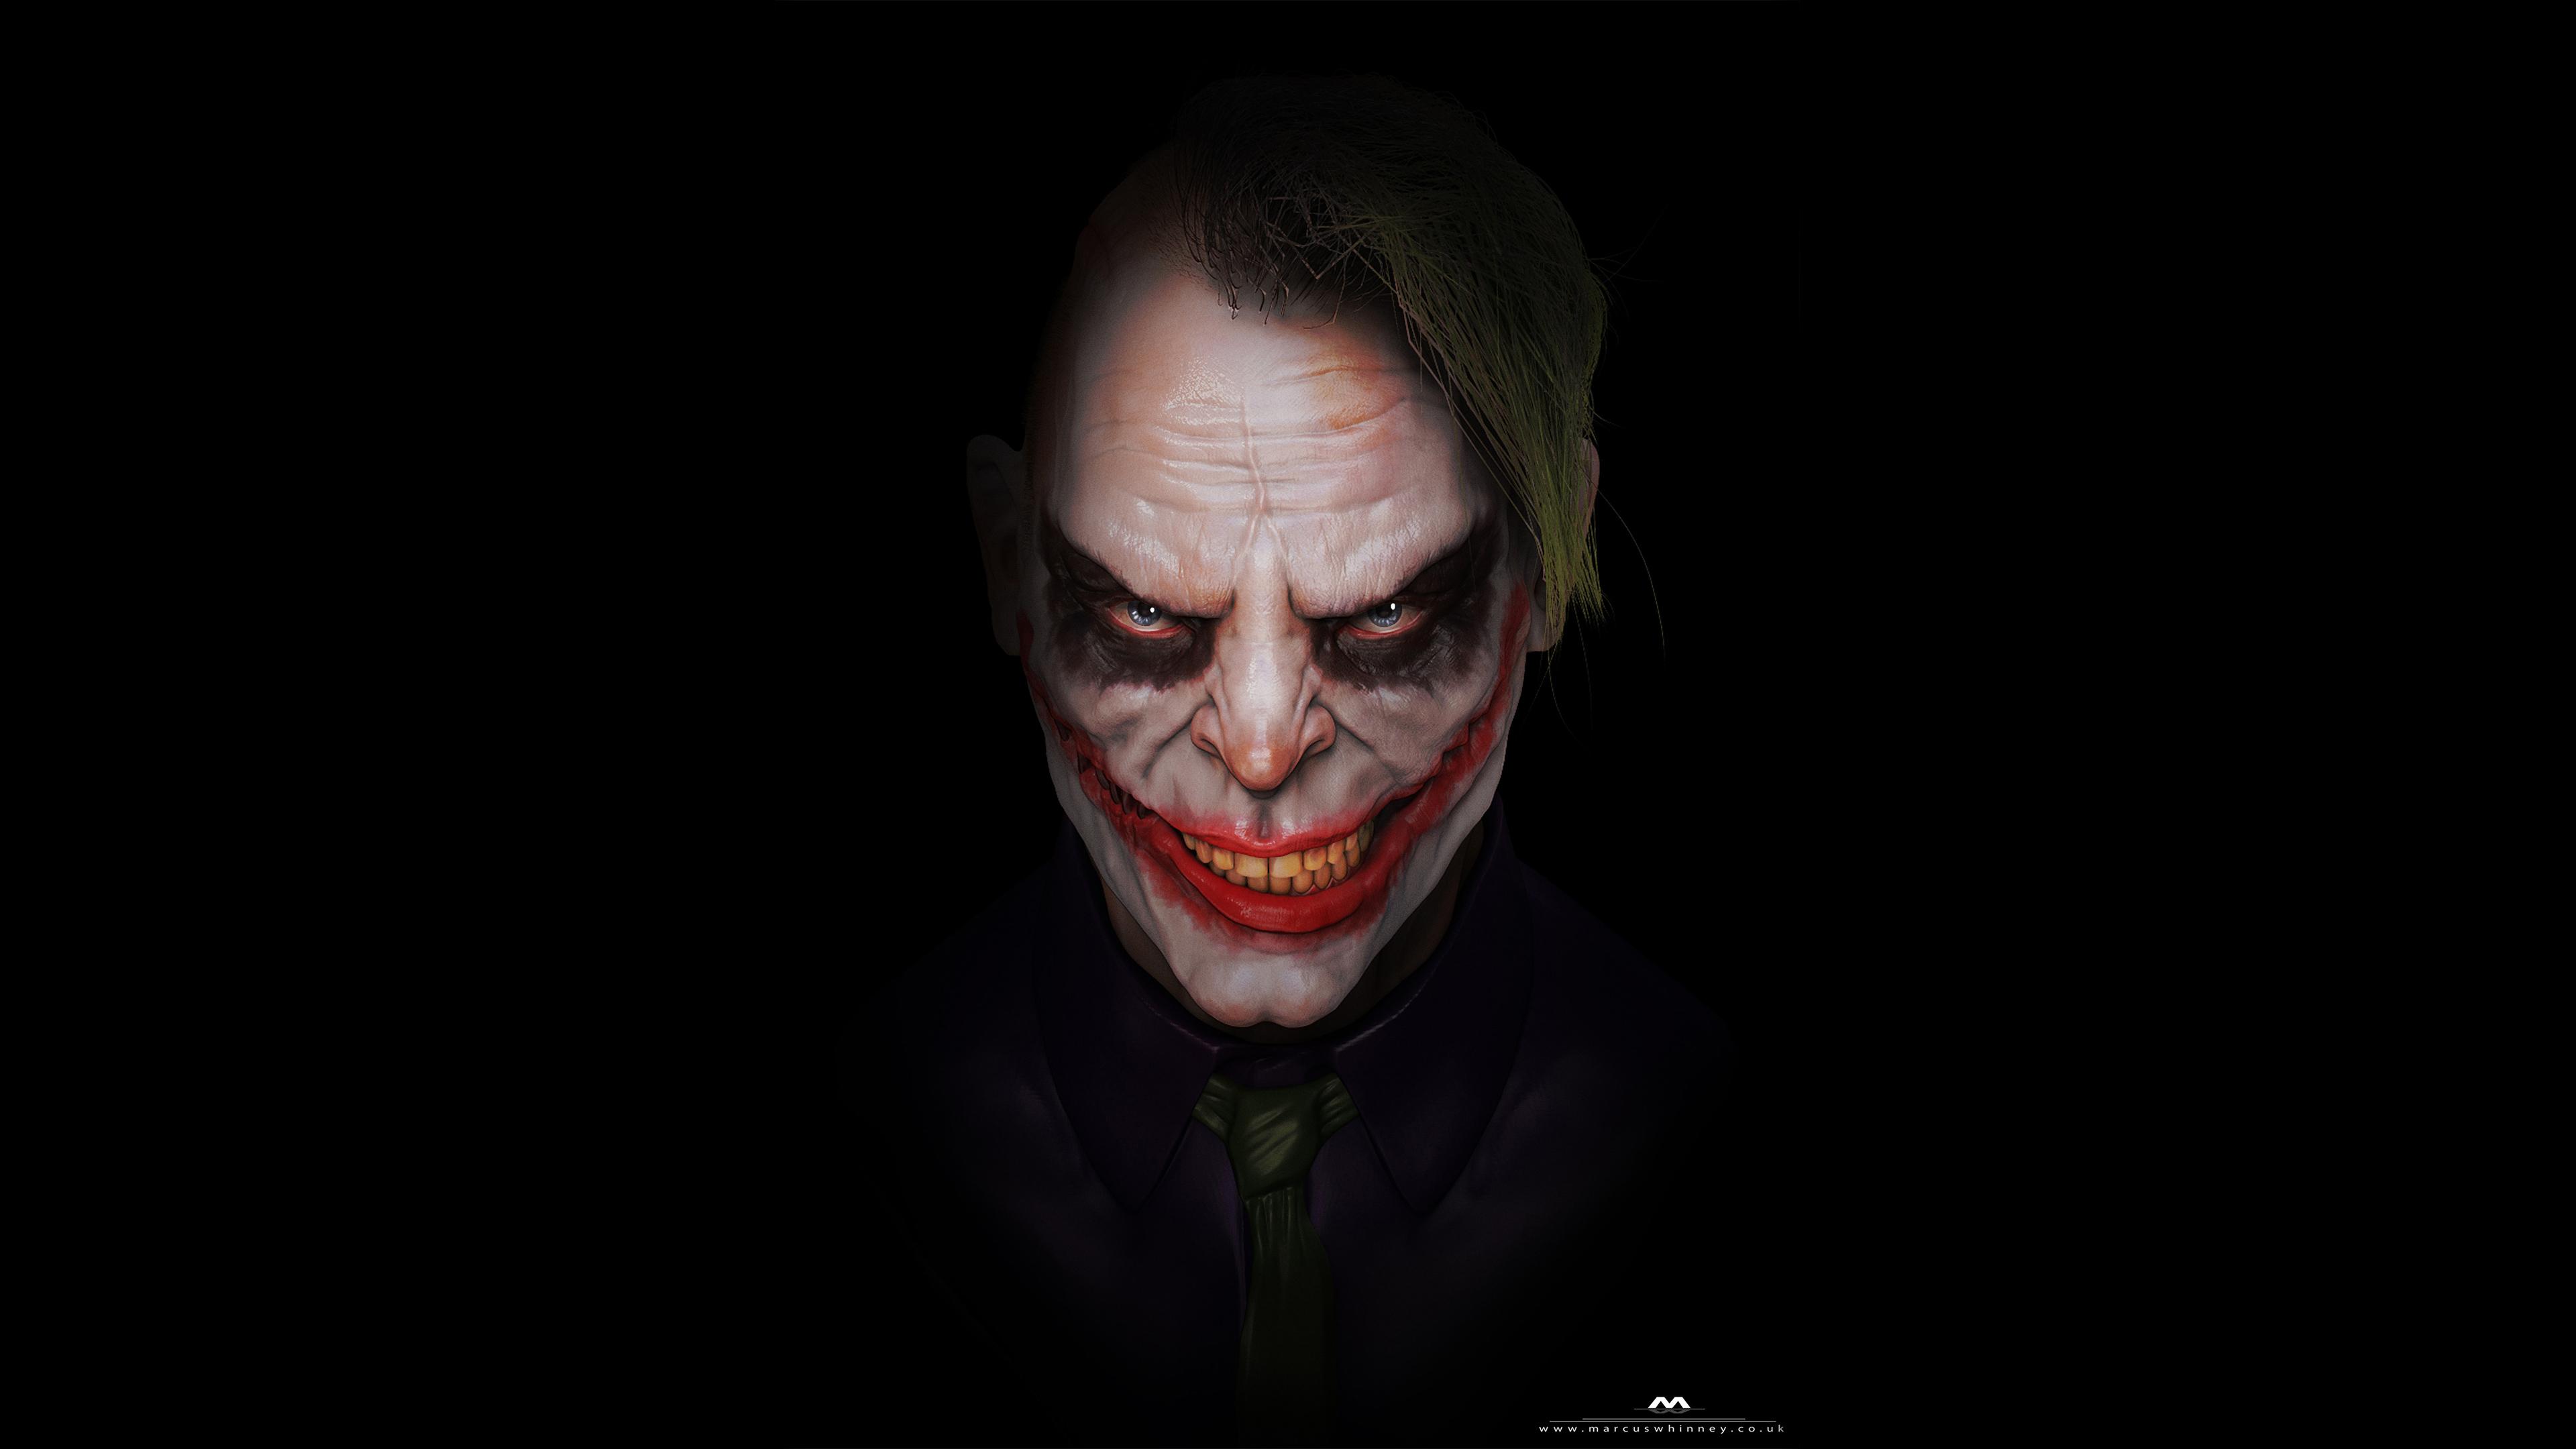 Scary Joker 4k, HD Superheroes, 4k Wallpaper, Image, Background